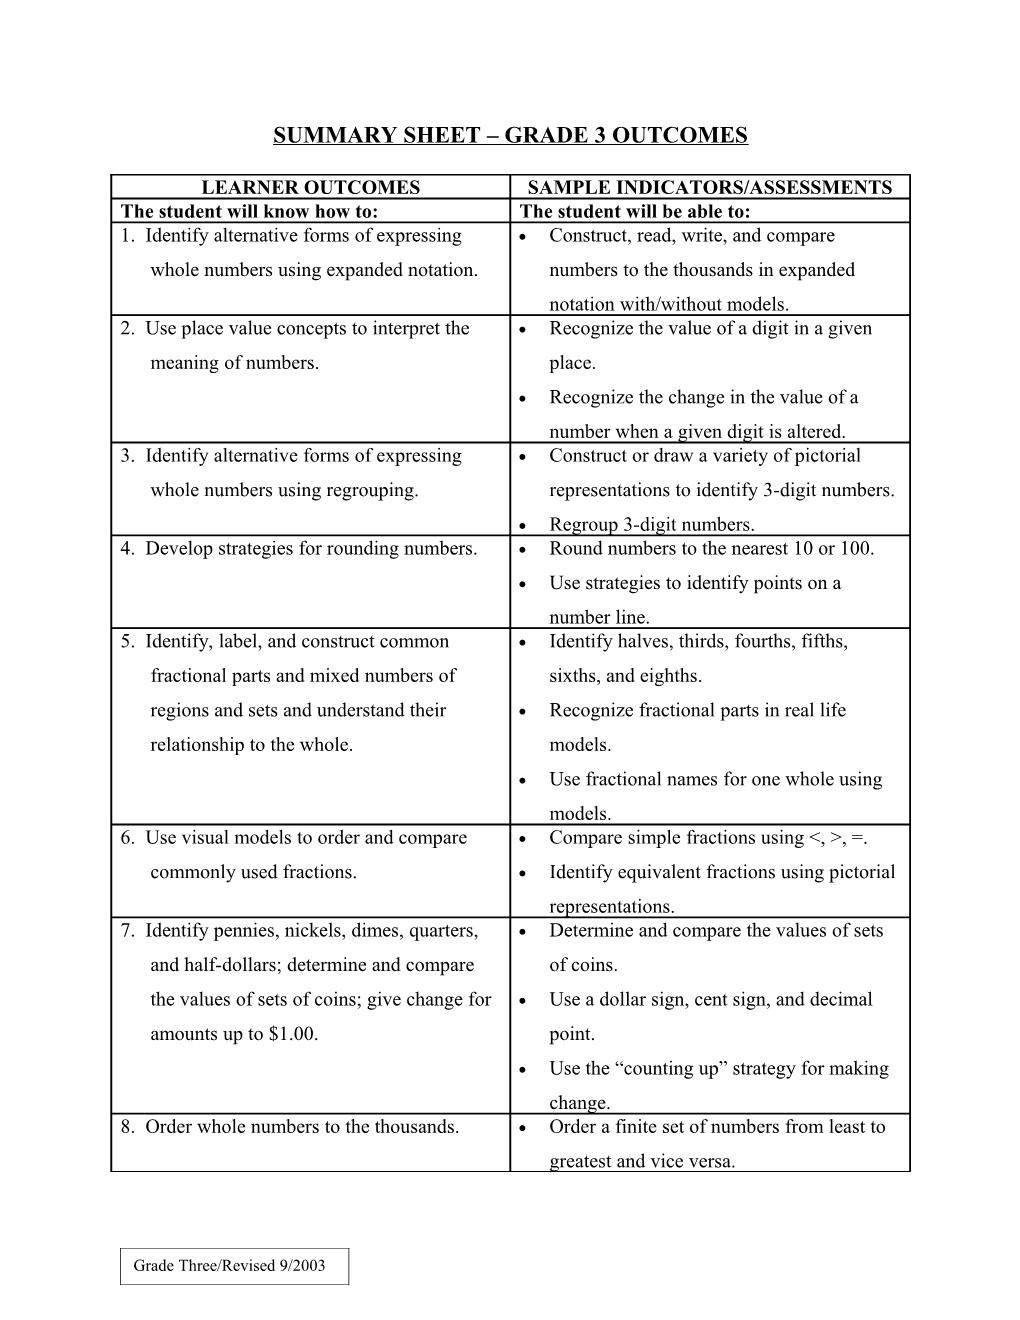 Summary Sheet Grade 3 Outcomes